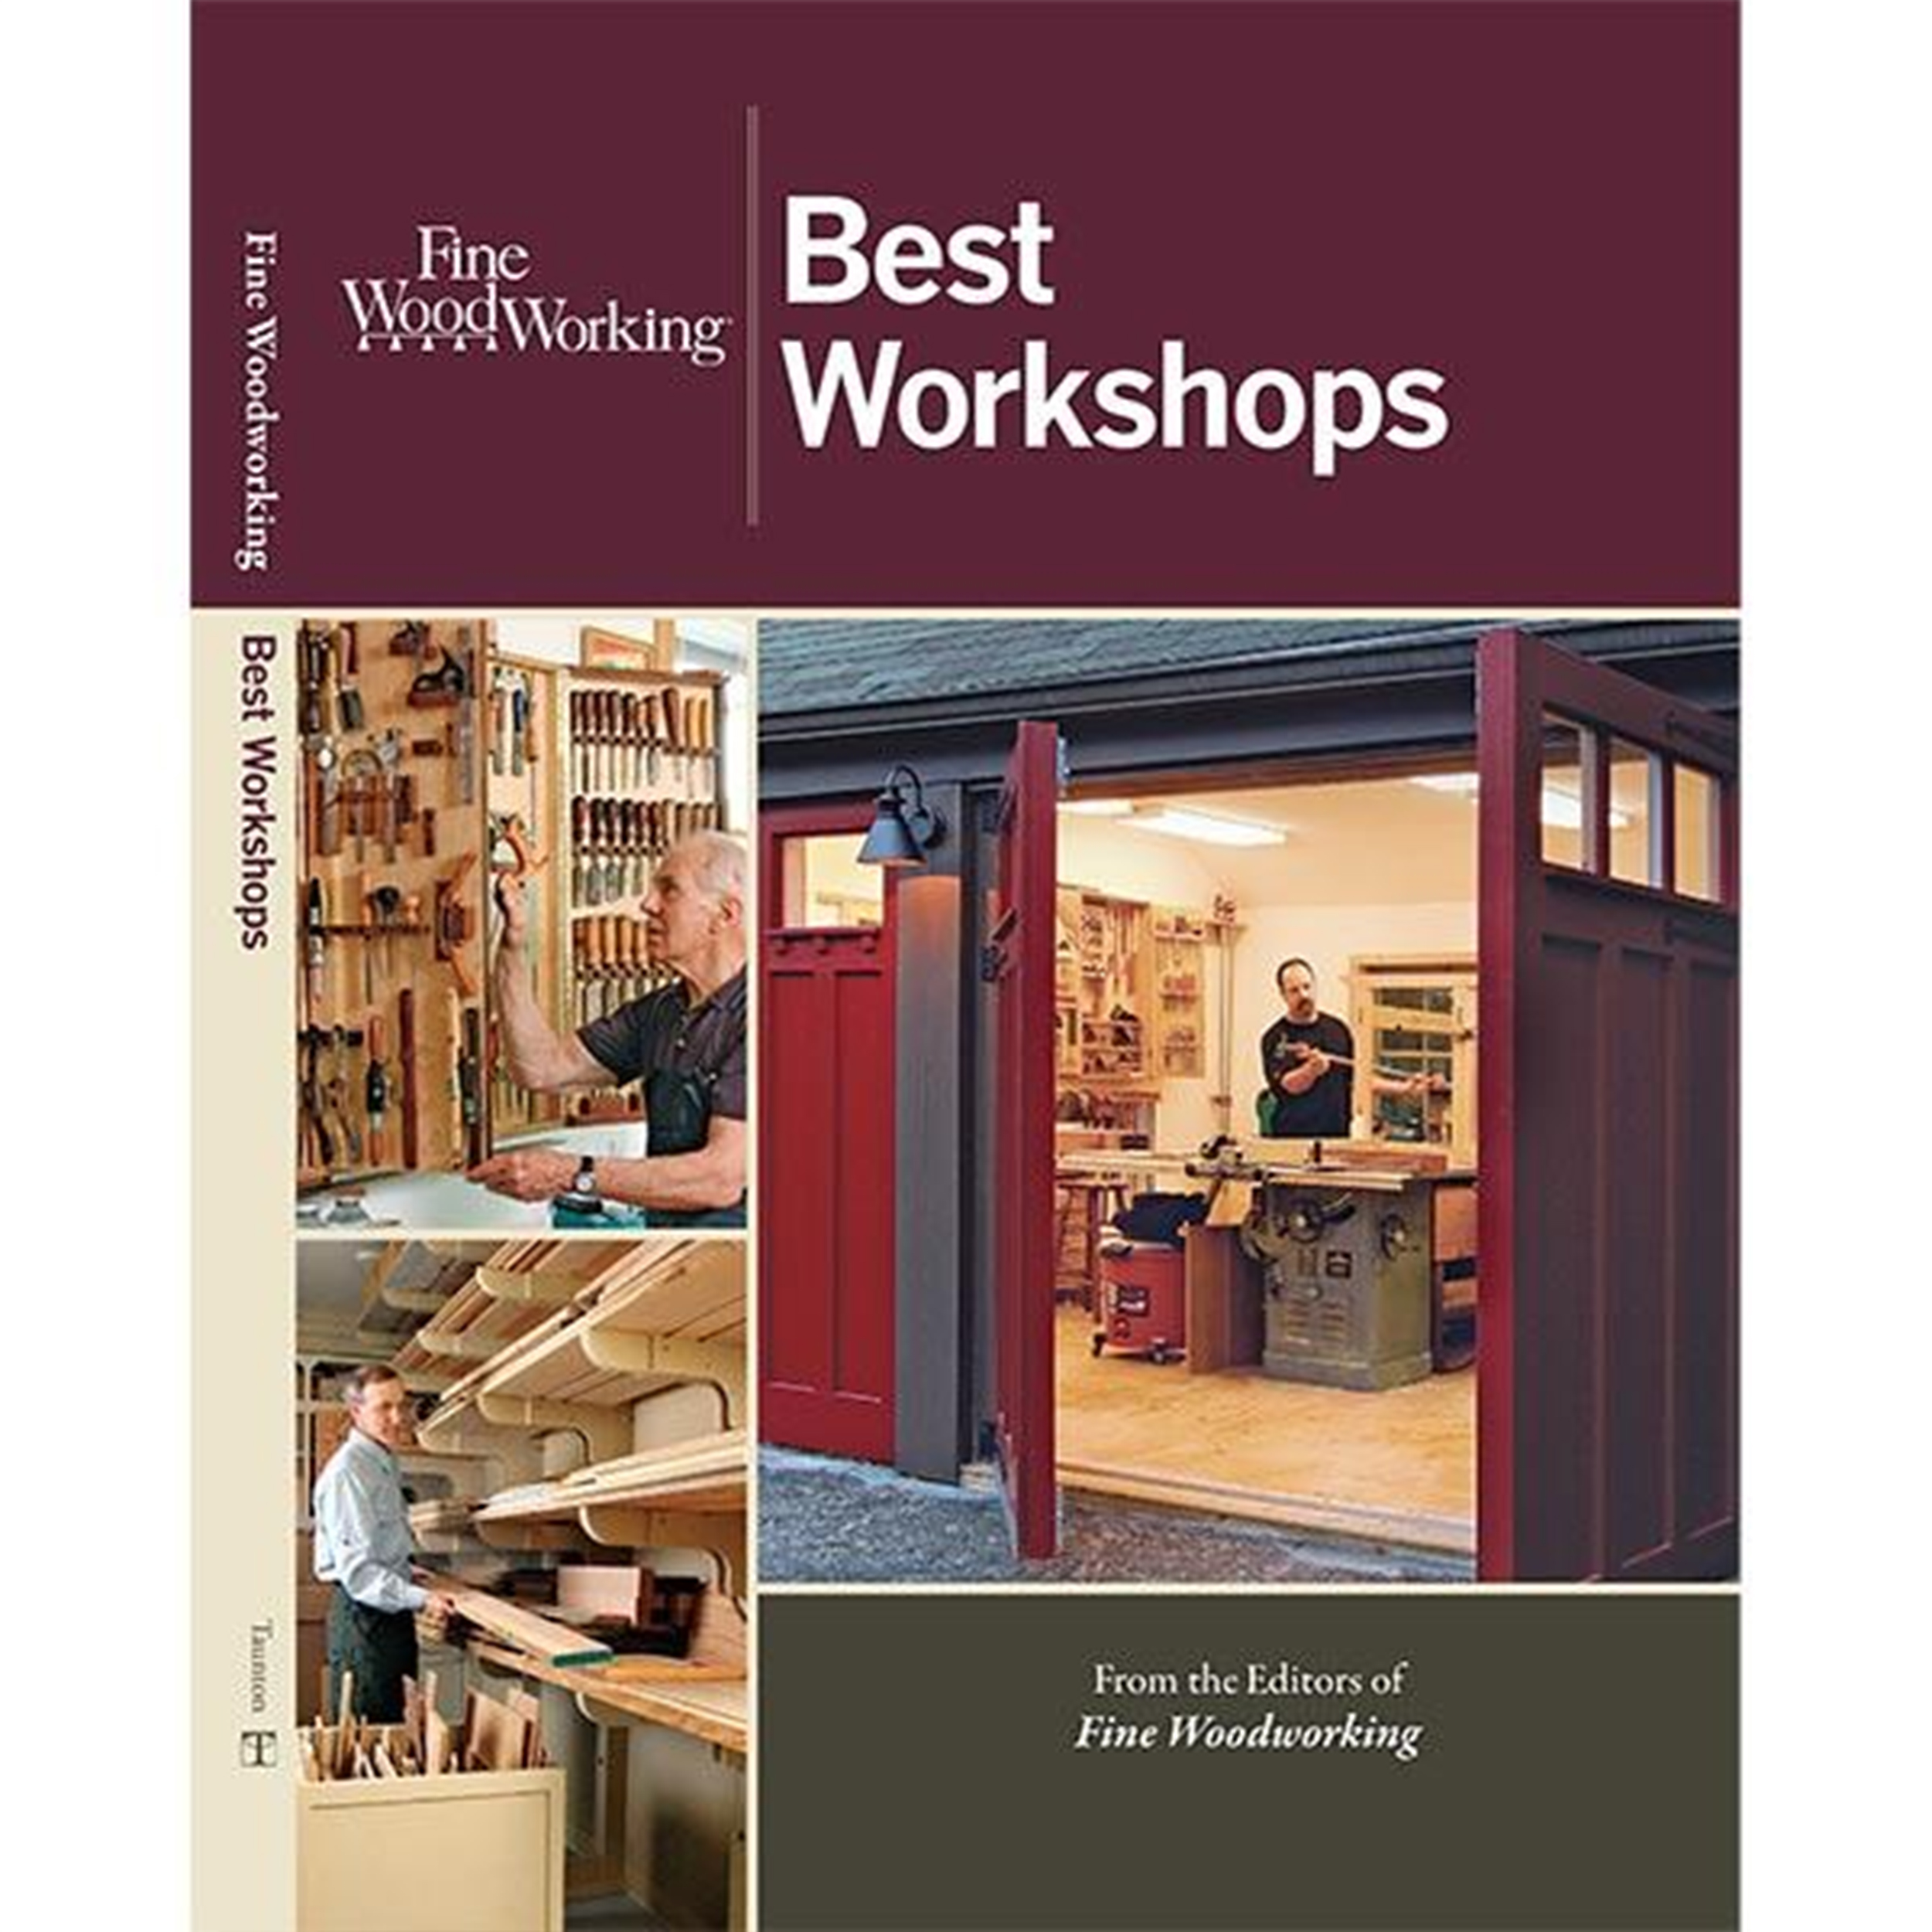 Best Workshops